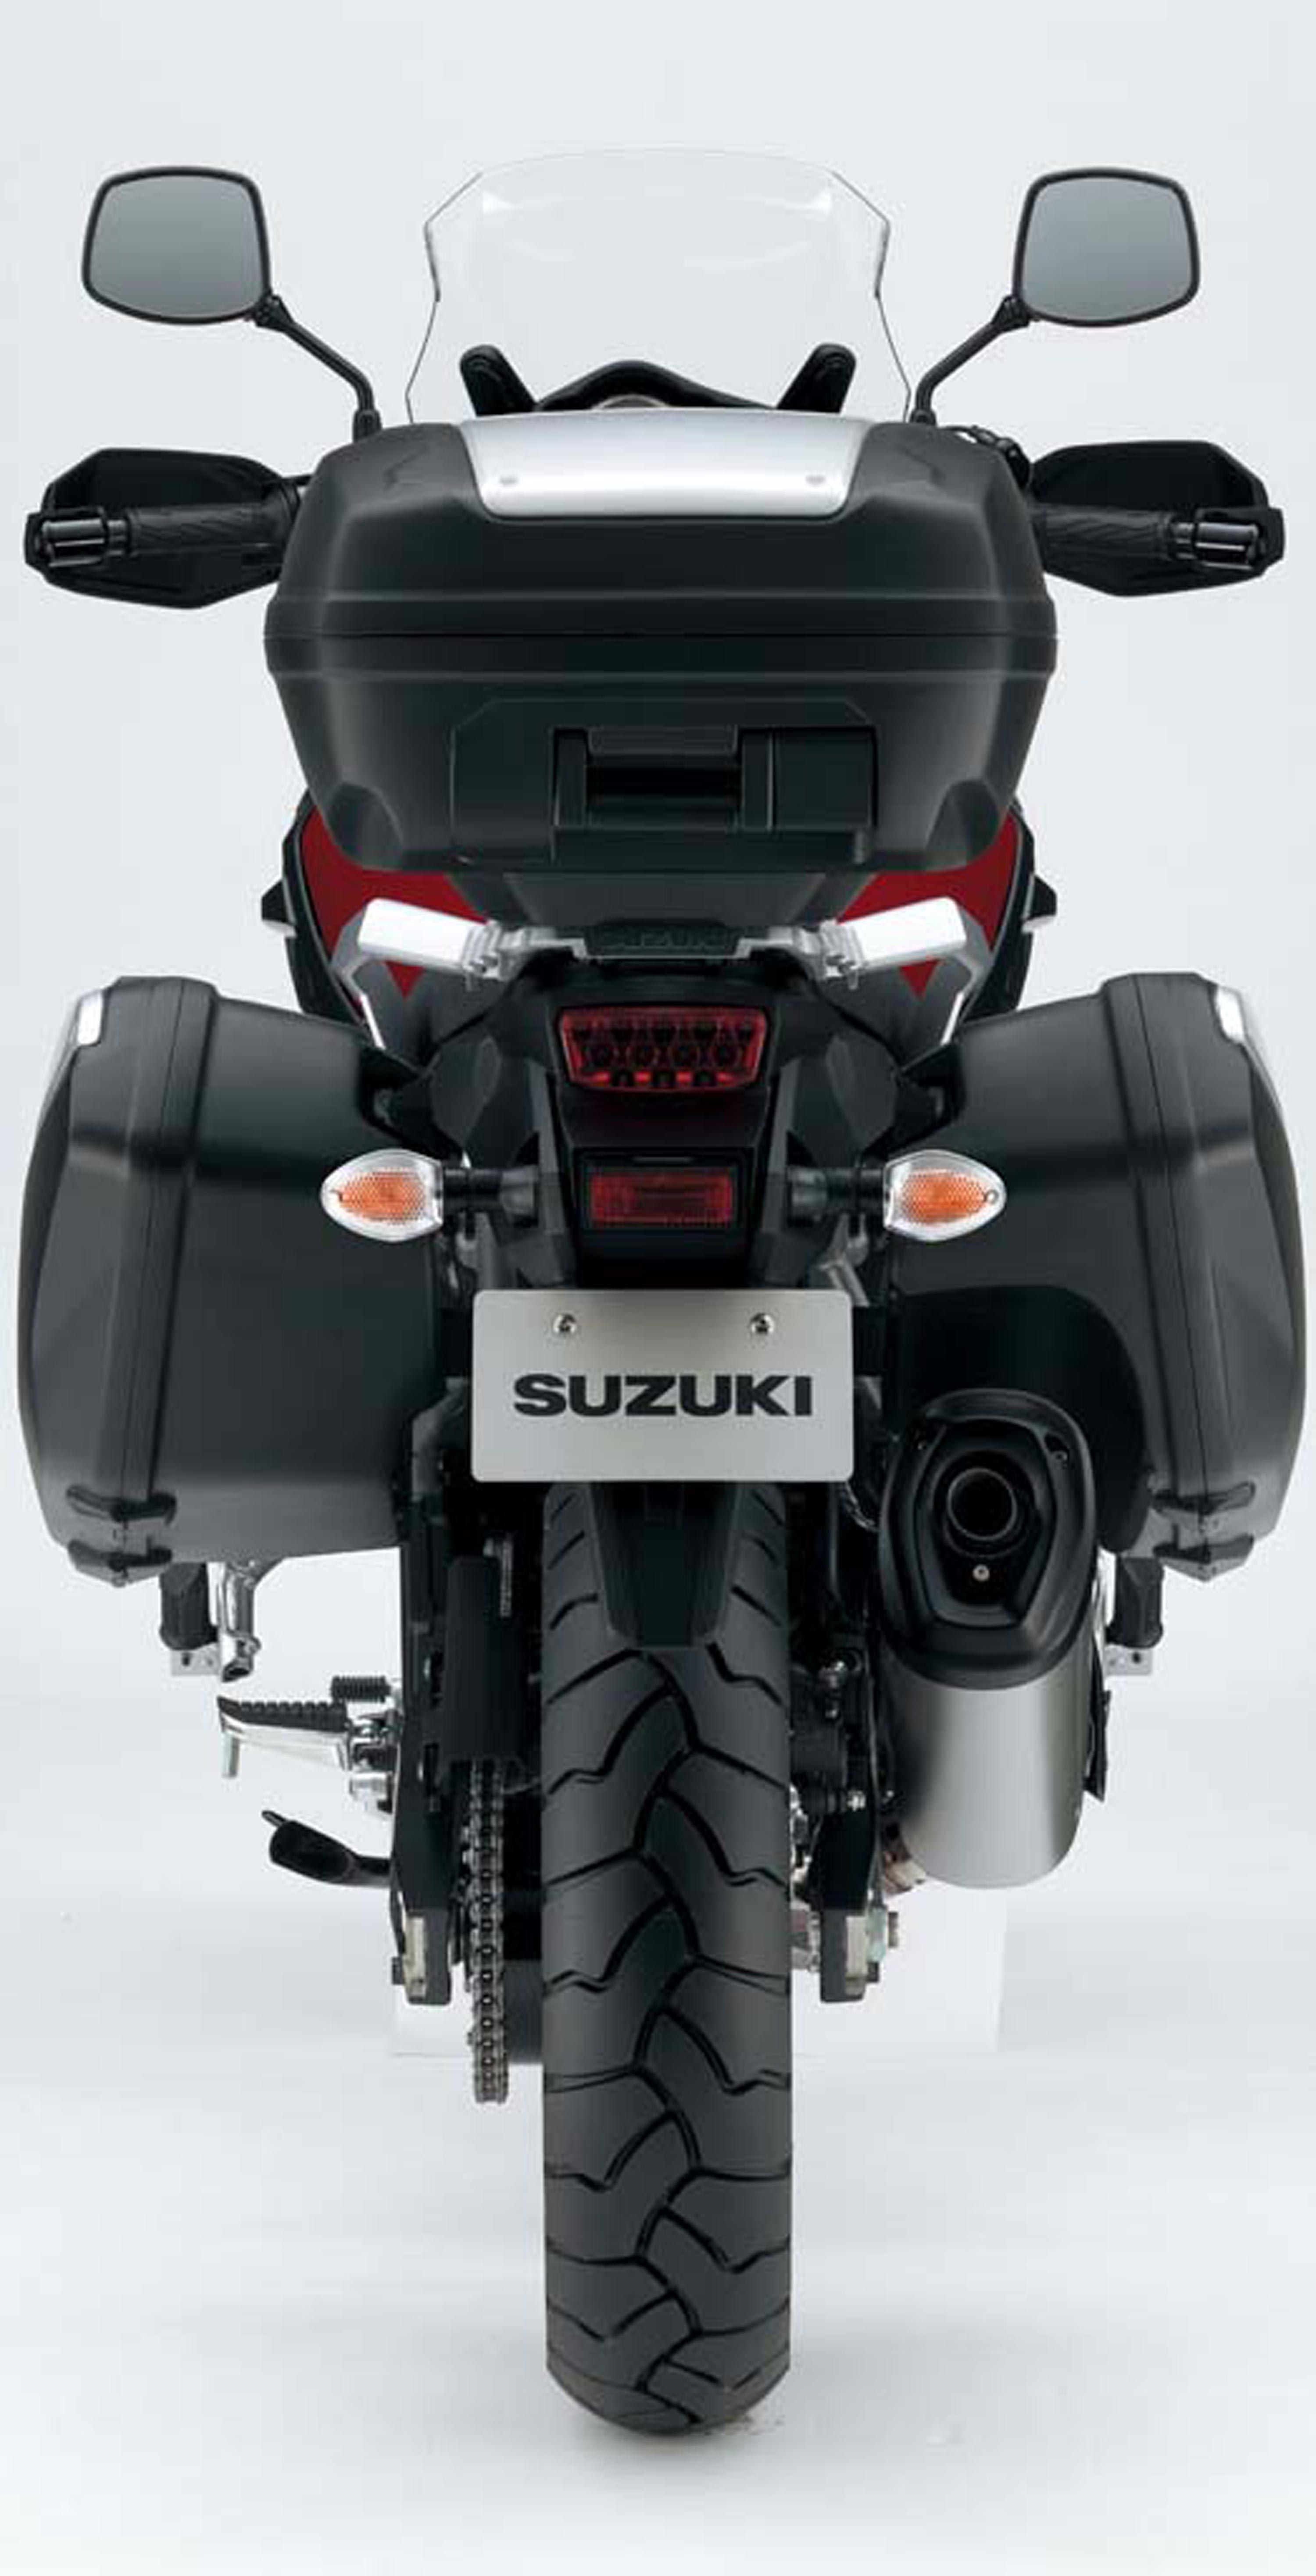 The All-New Suzuki V-Strom 1000